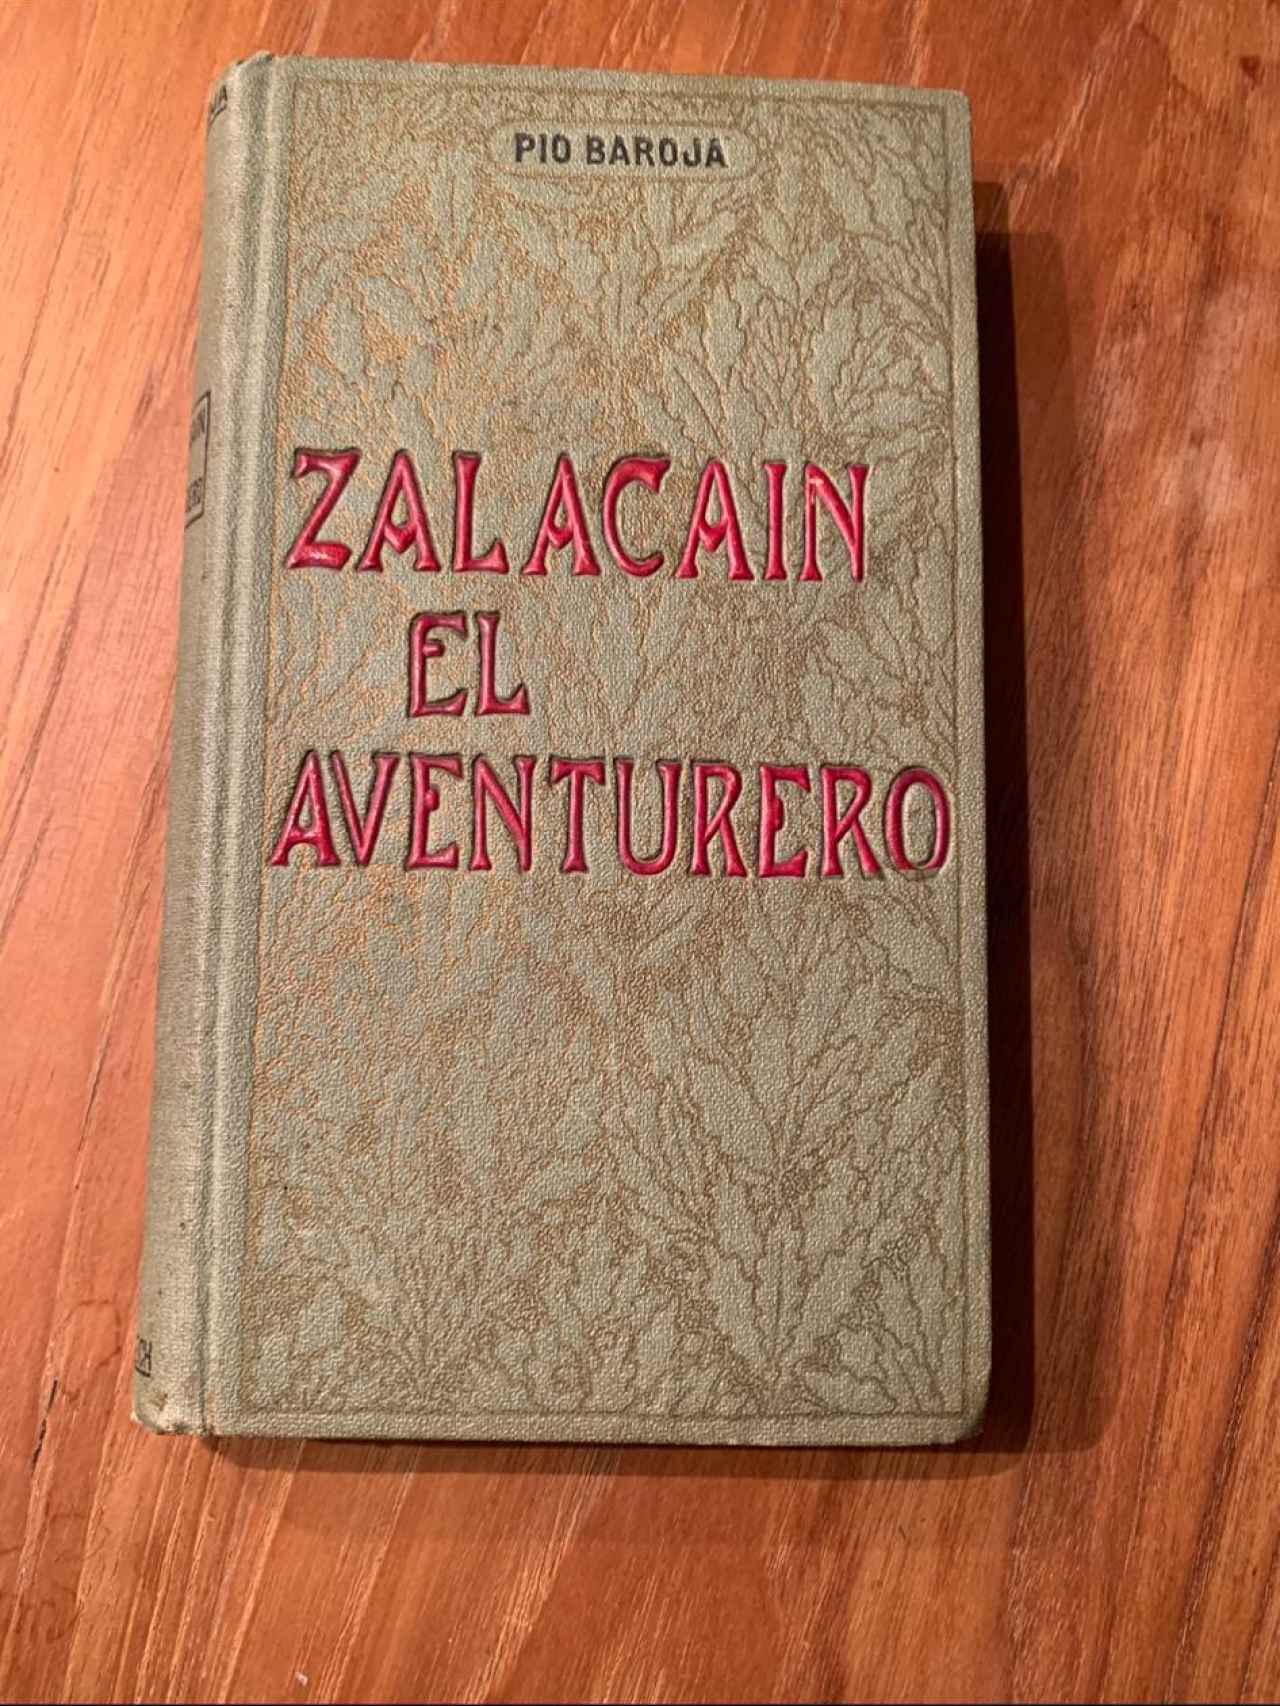 Primera edición de 'Zalacaín El Aventurero' que preside el restaurante Zalacaín.